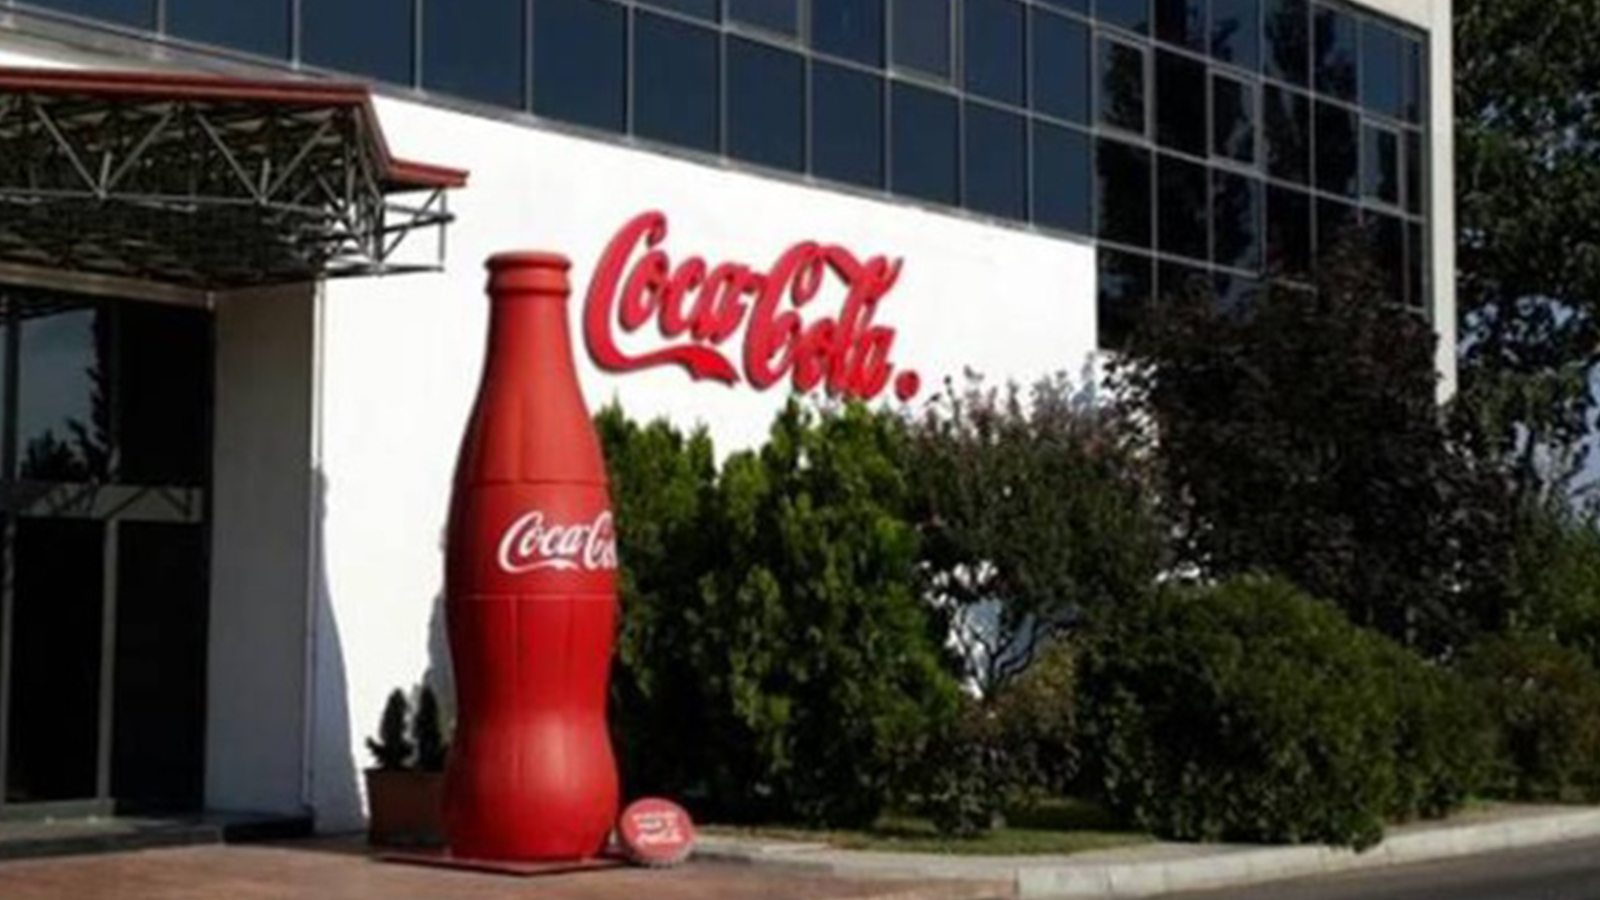 Koronavirüs Coca-Cola'yı da vurdu: 2 bin 200 kişi işten çıkarılacak